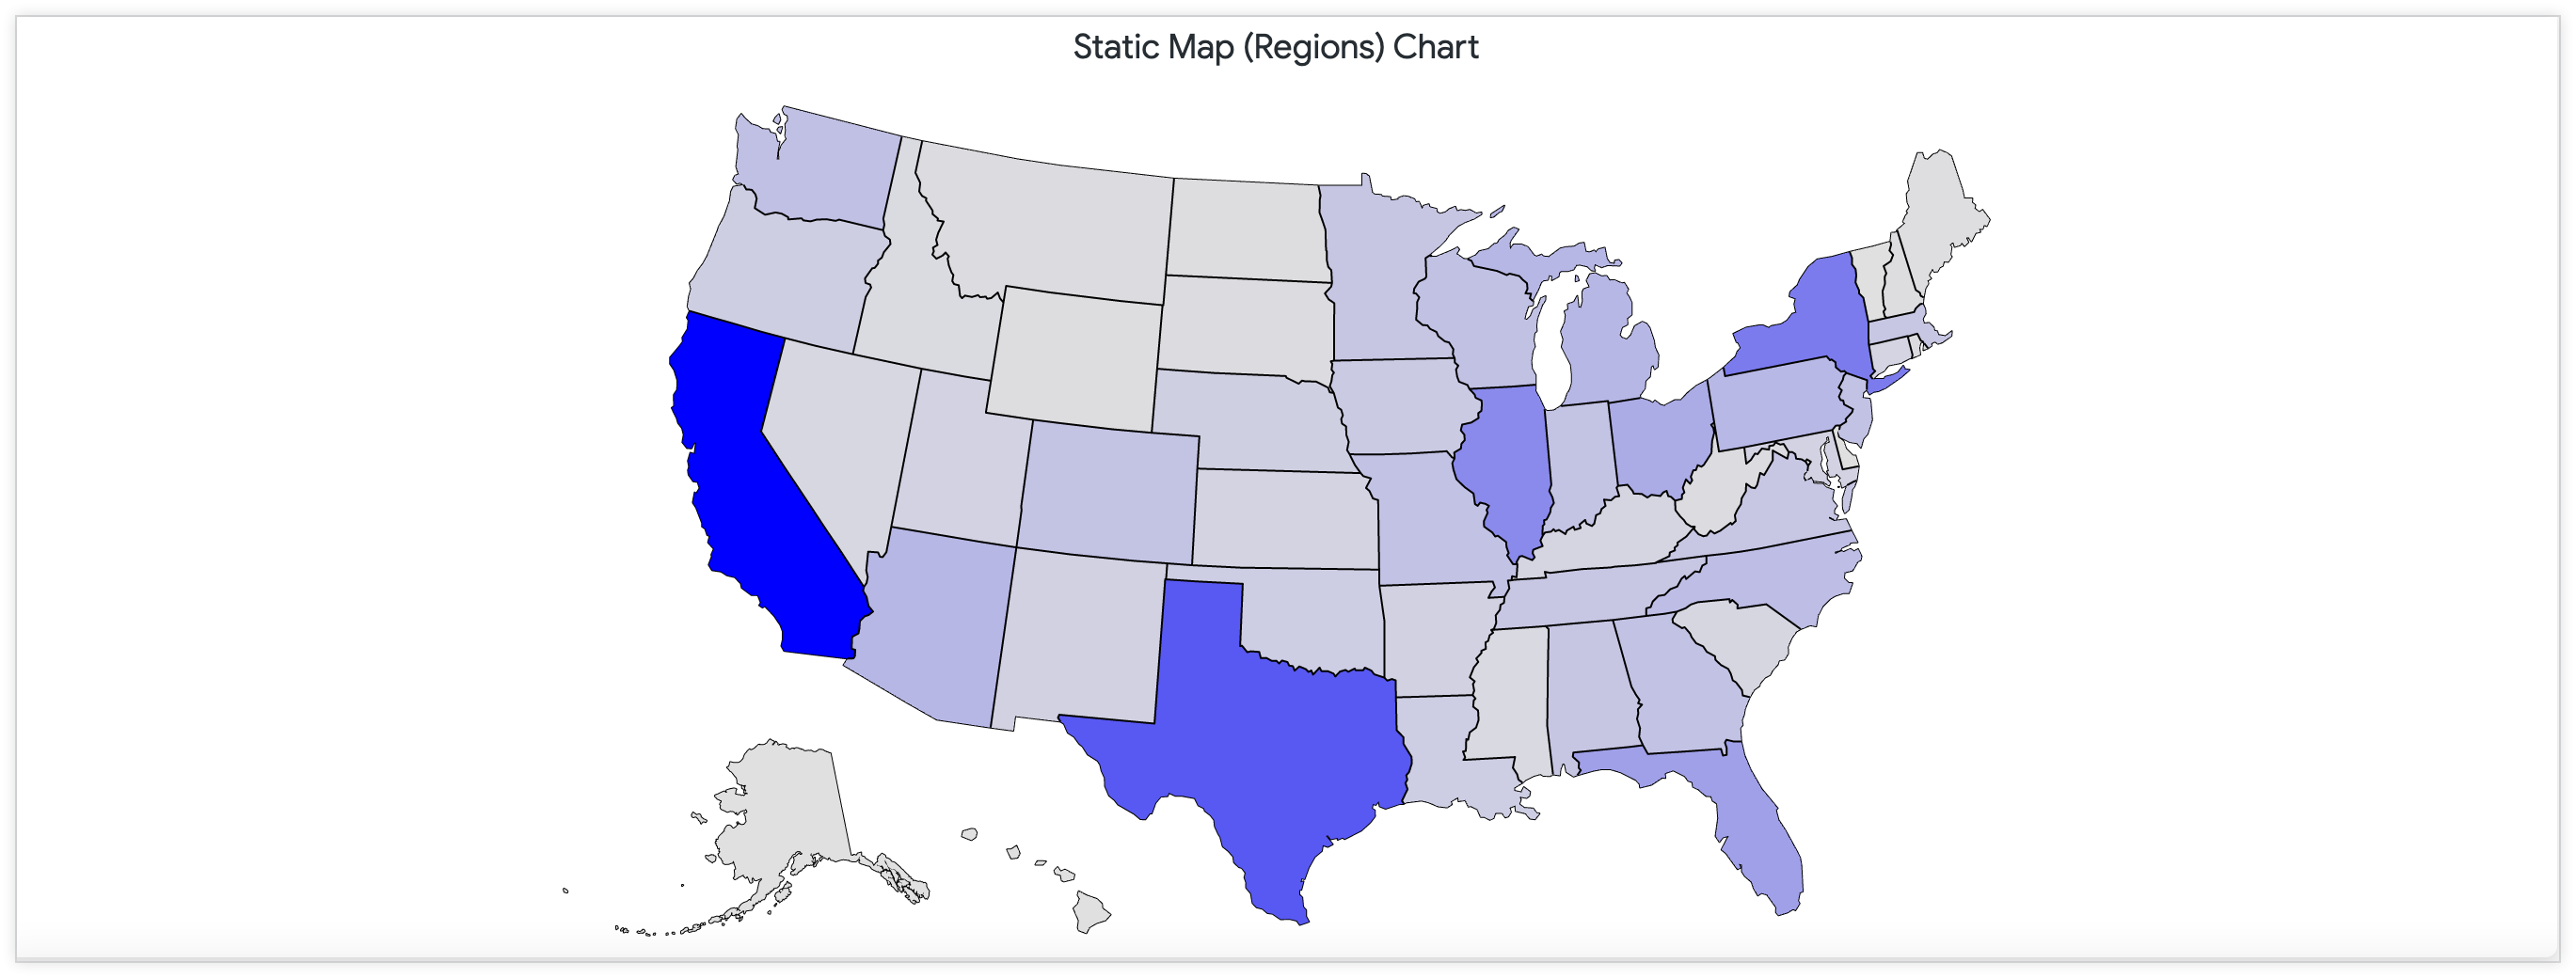 연속 색상 팔레트를 통해 미국 내 매장 수를 보여주는 정적 지도입니다.